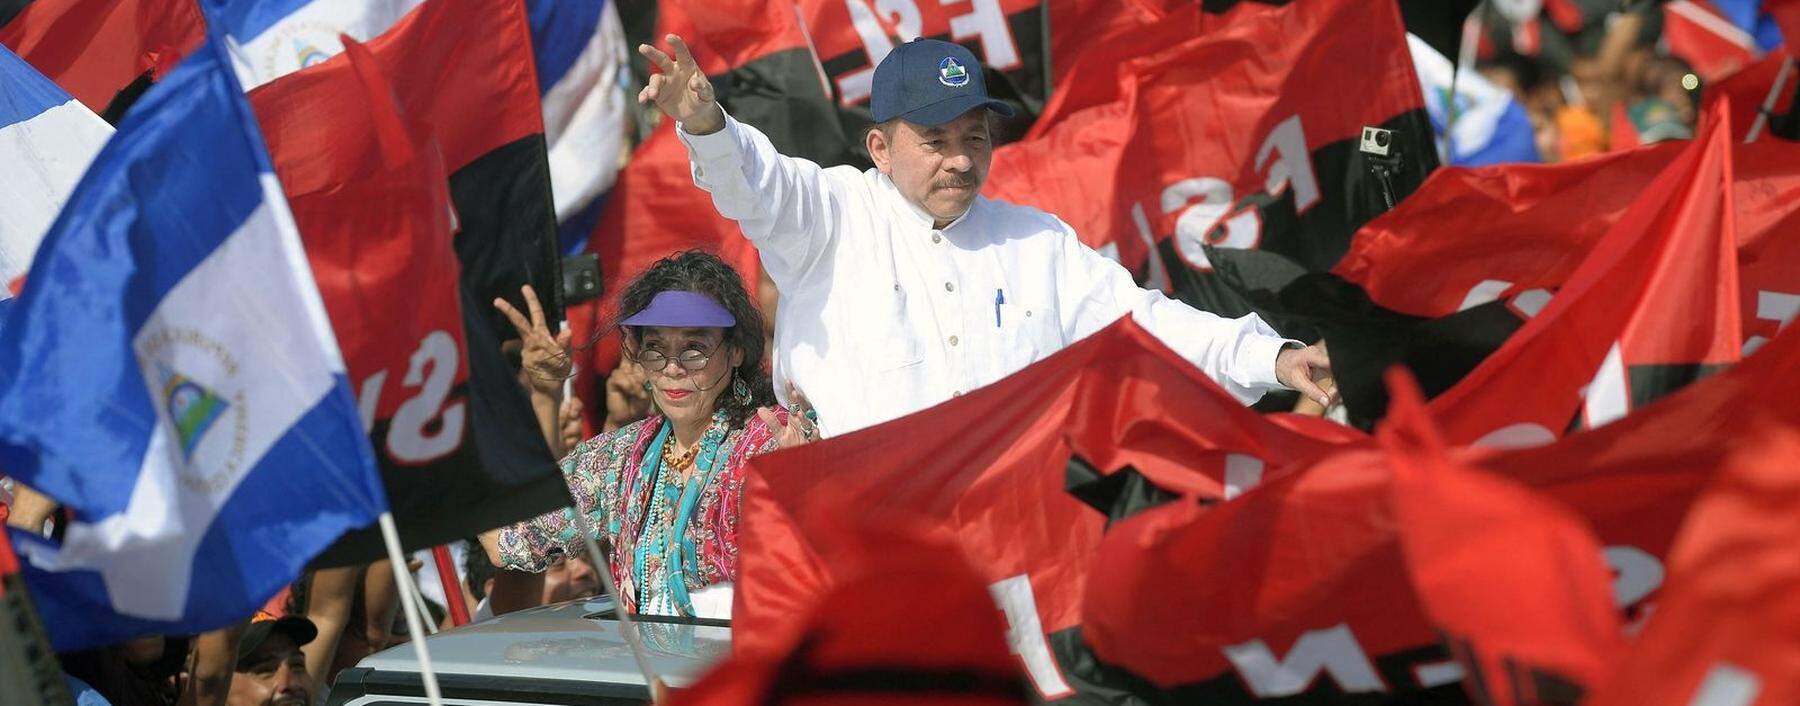 Das Präsidentenpaar am 19. Juli 2018, dem 39. Jahrestag der sandinistischen Revolution.